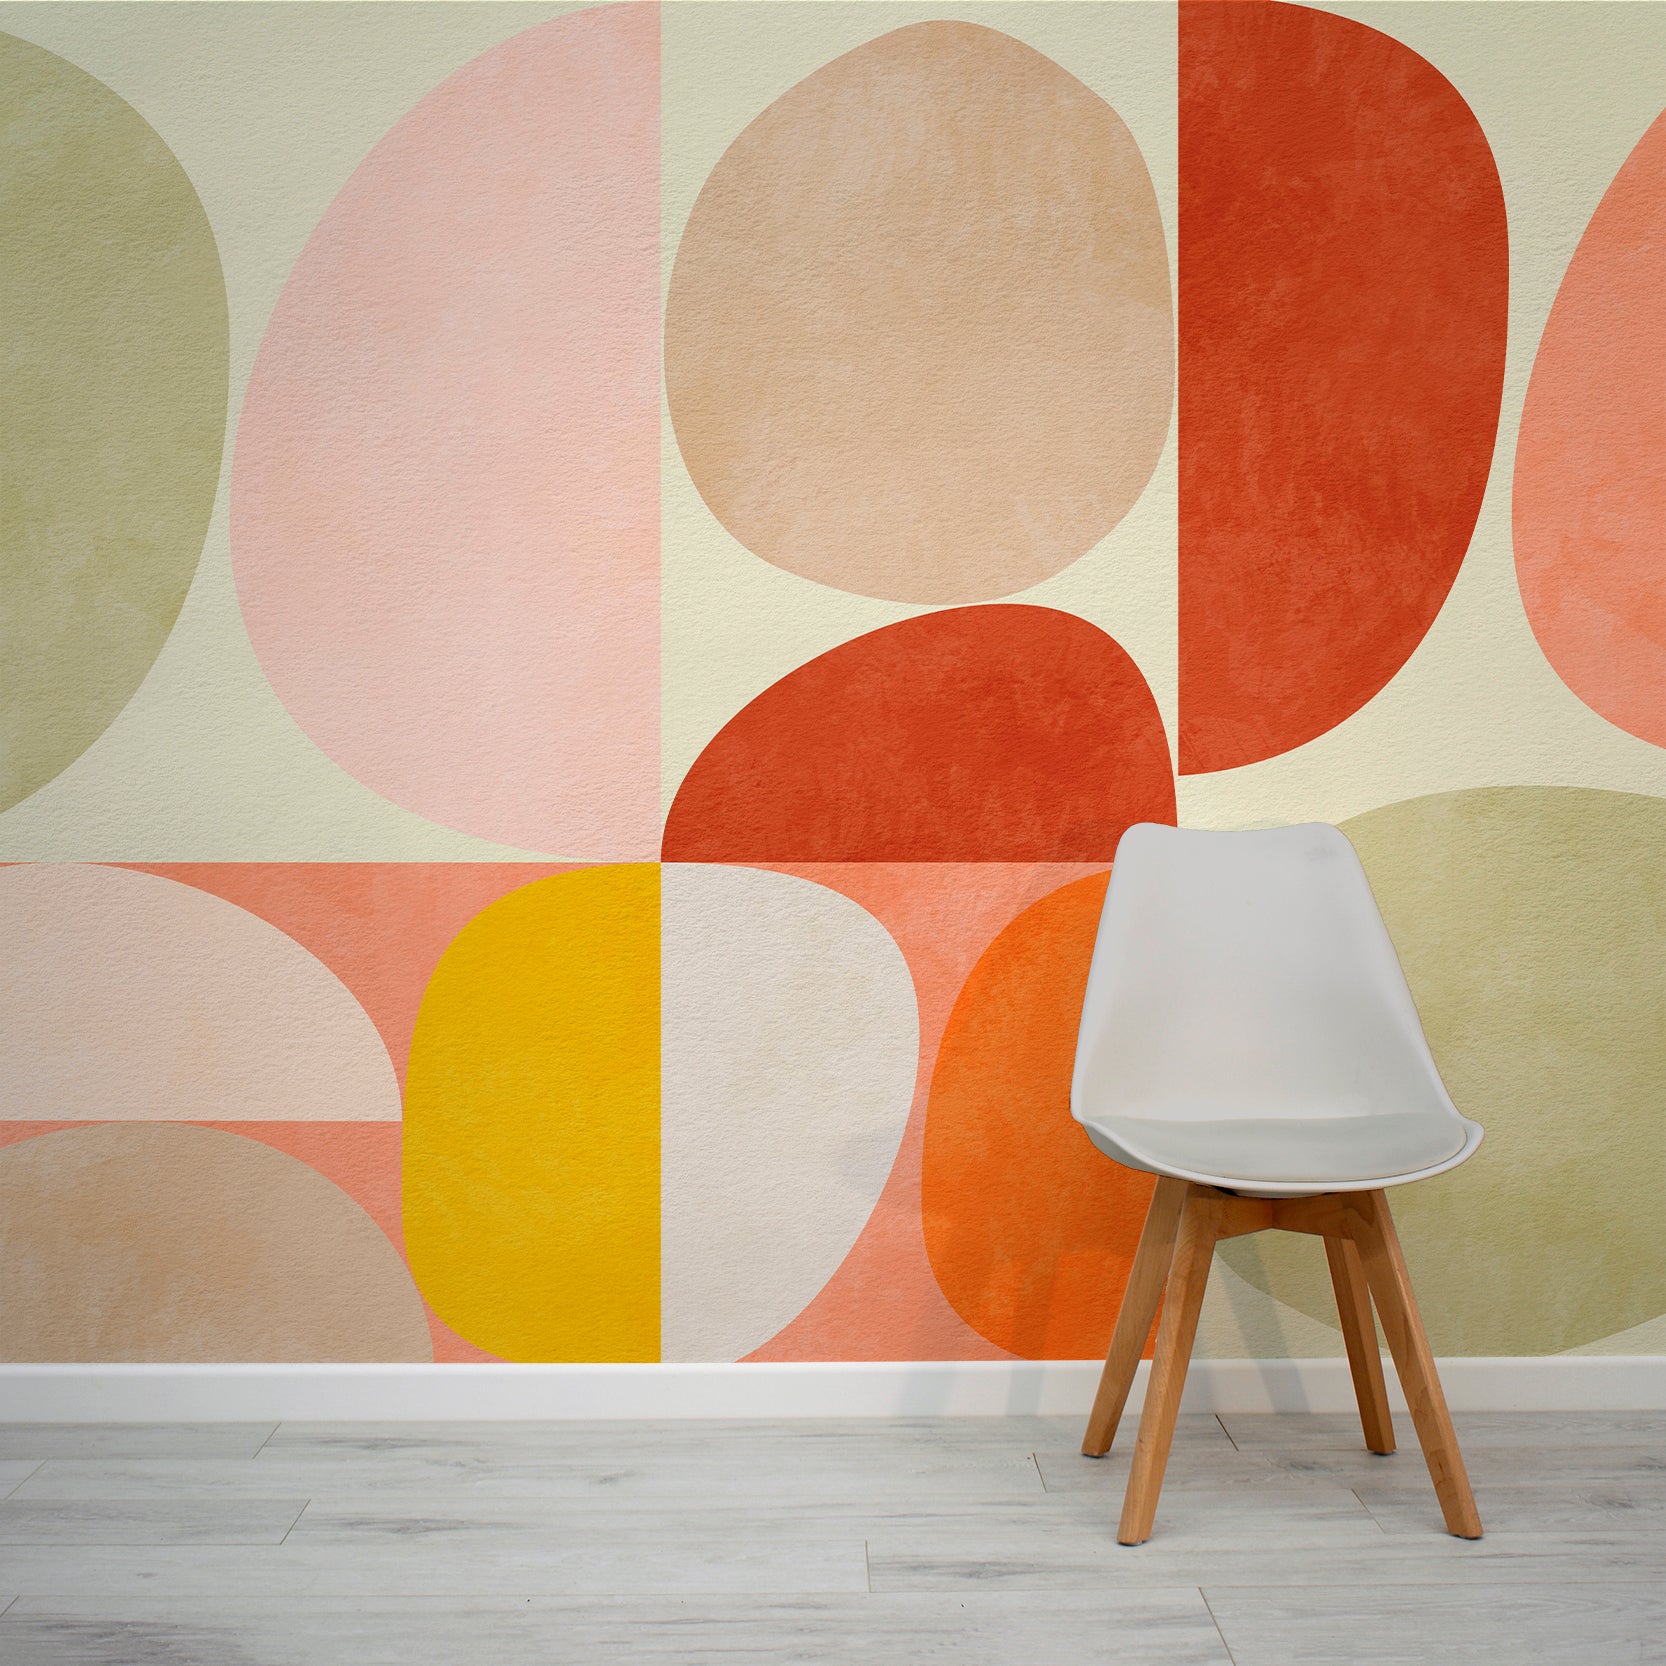 zanger residu Stewart Island Modernistic Bauhaus Abstract Wallpaper Mural | WallpaperMural.com